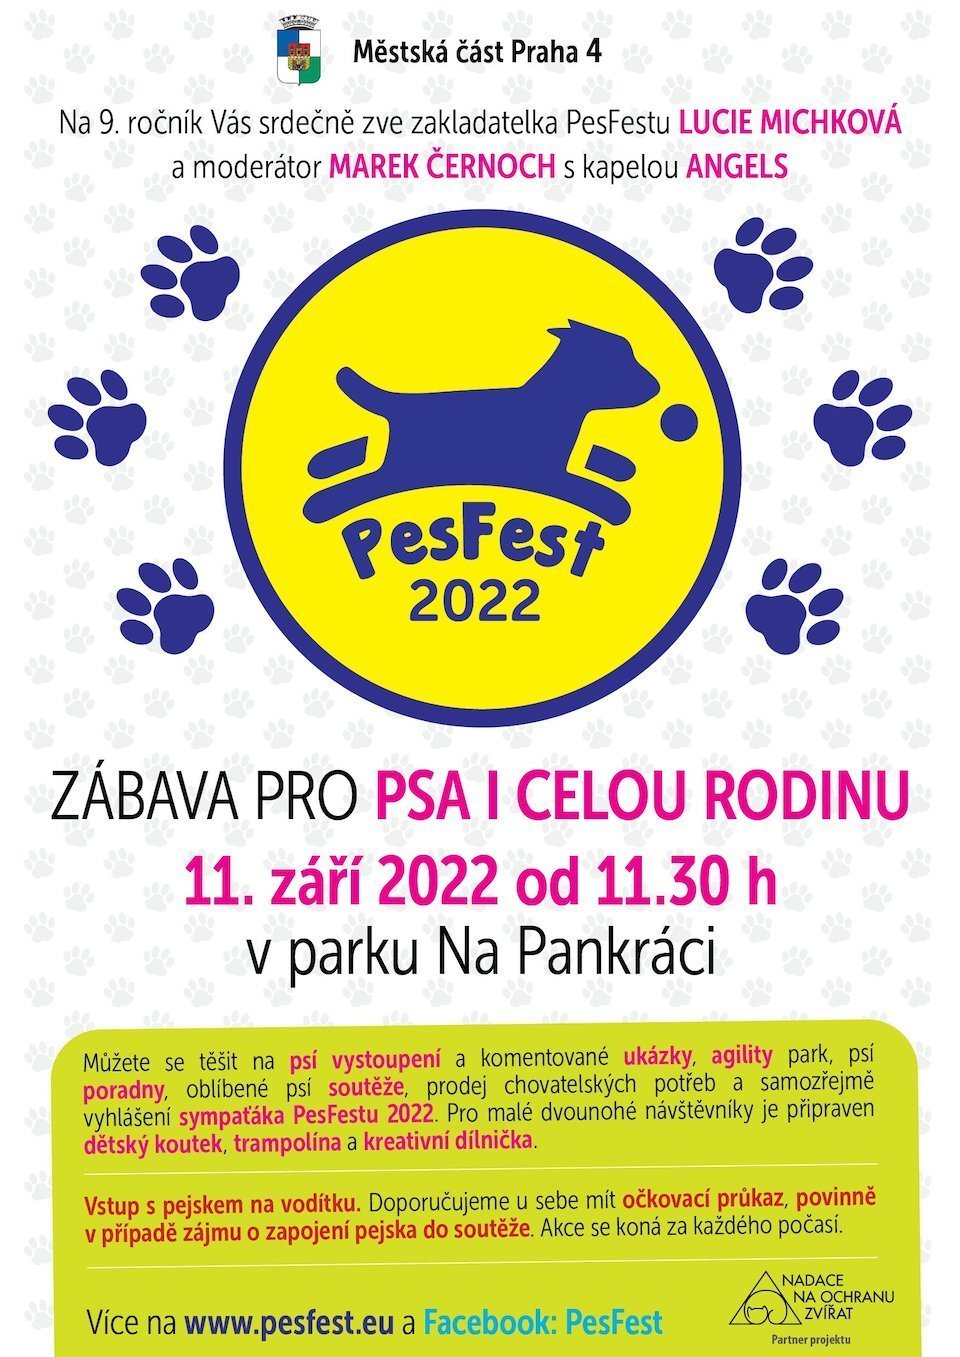 PesFest 2022 Prague